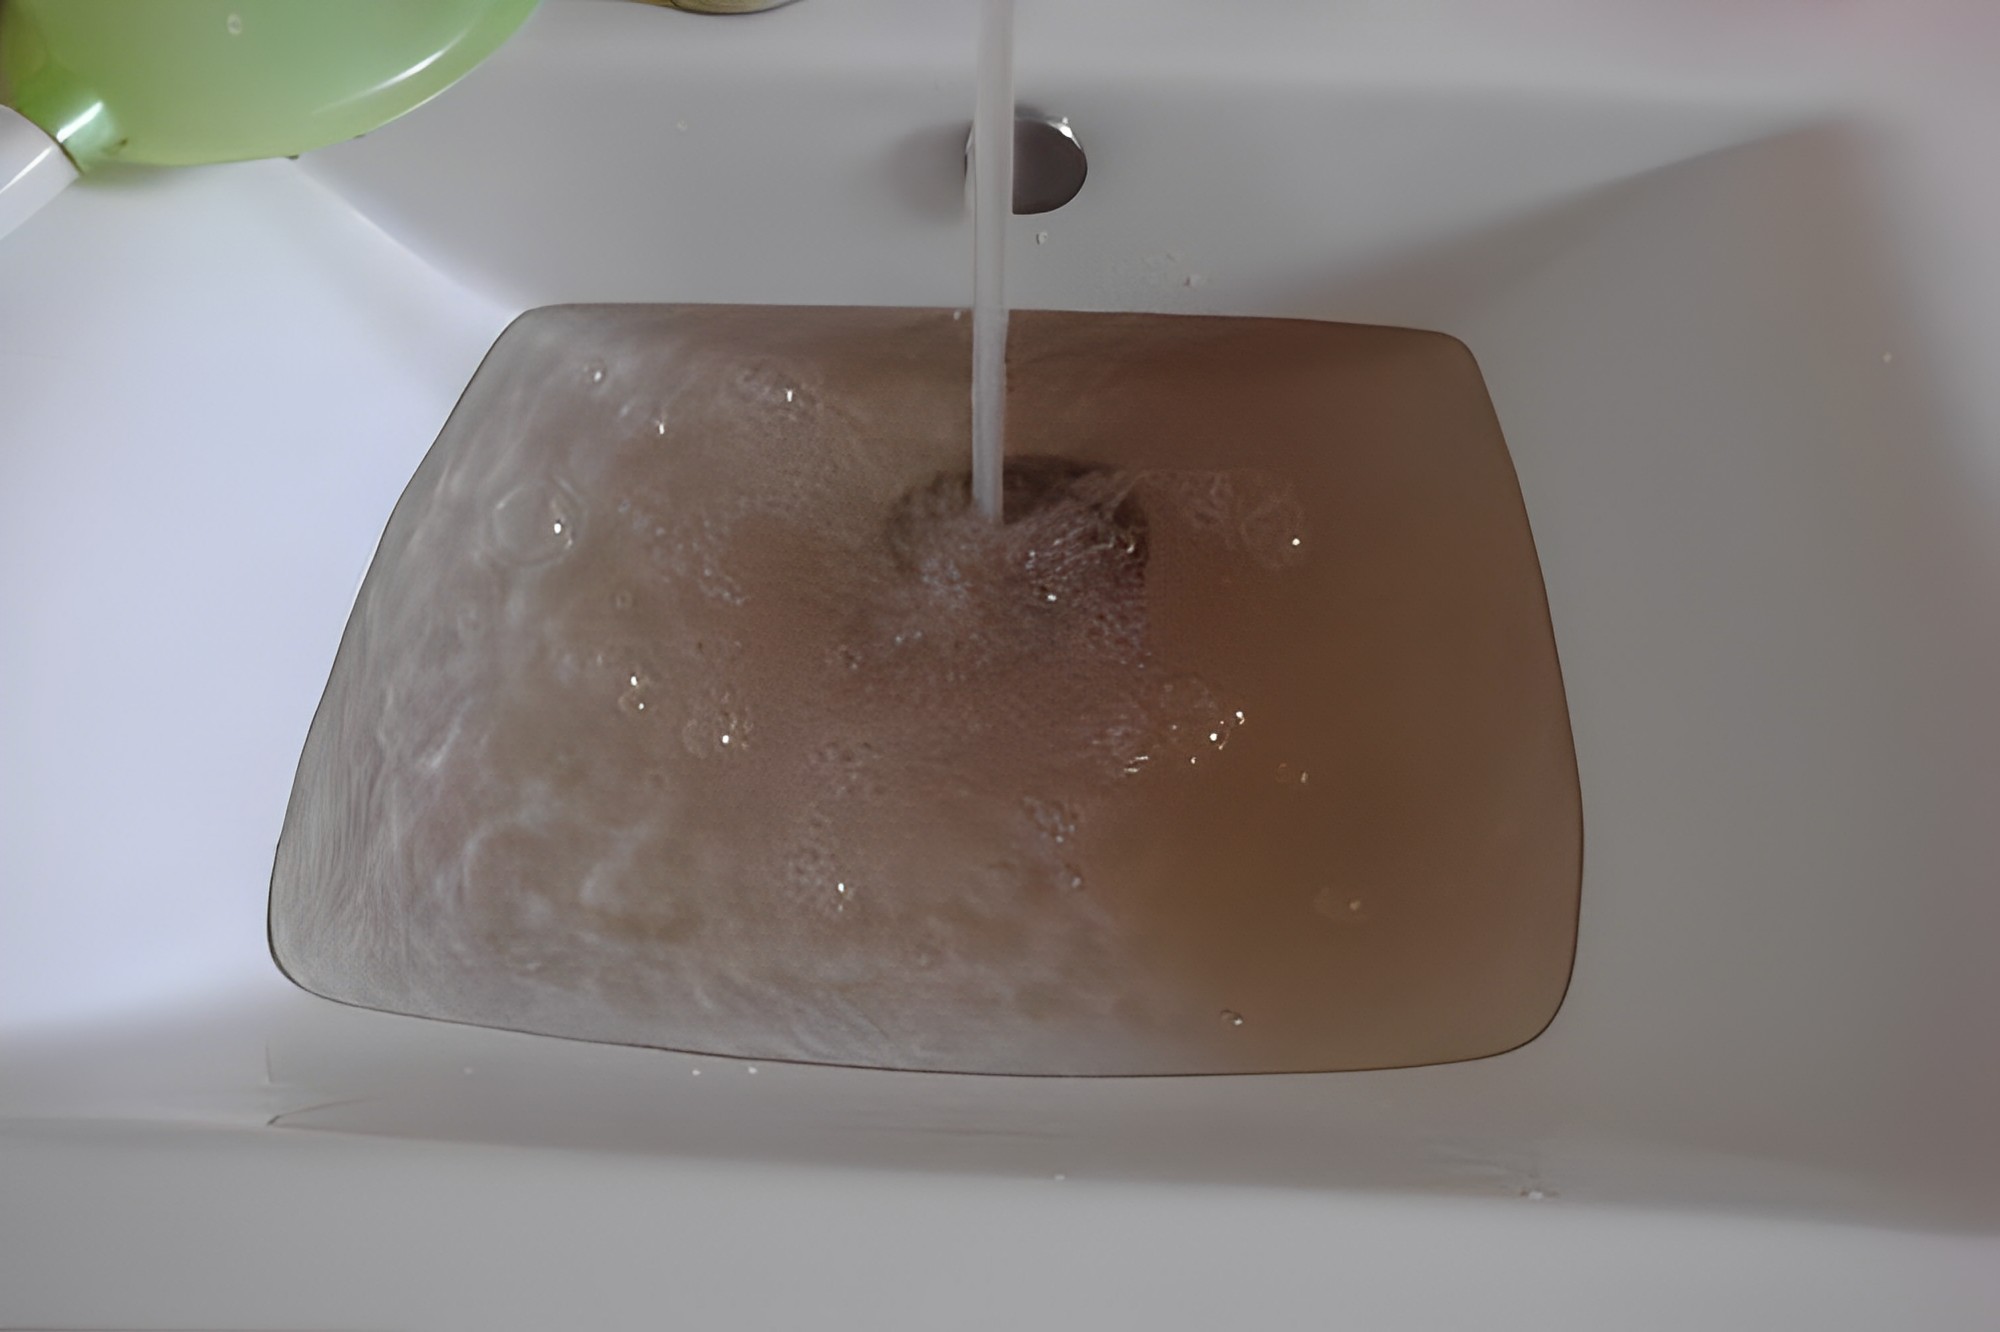 Nhận biết nước máy bị ô nhiễm nhớ 6 dấu hiệu này, nắm được thì nước nhà bạn luôn sạch, an toàn sức khỏe - 8